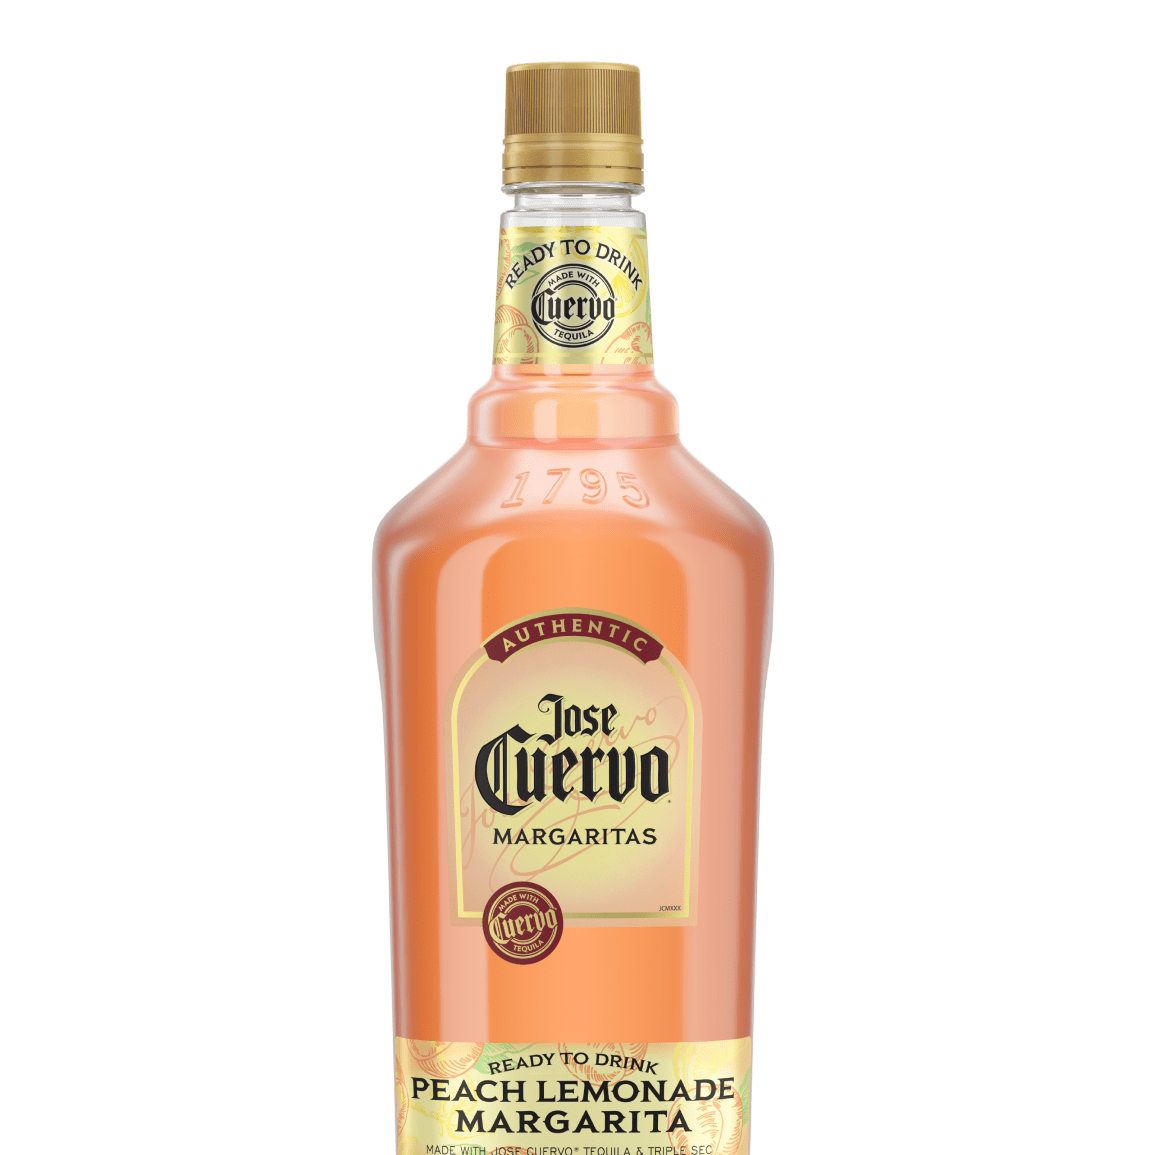 Jose Cuervo  Margaritas Authentic Peach Lemonade